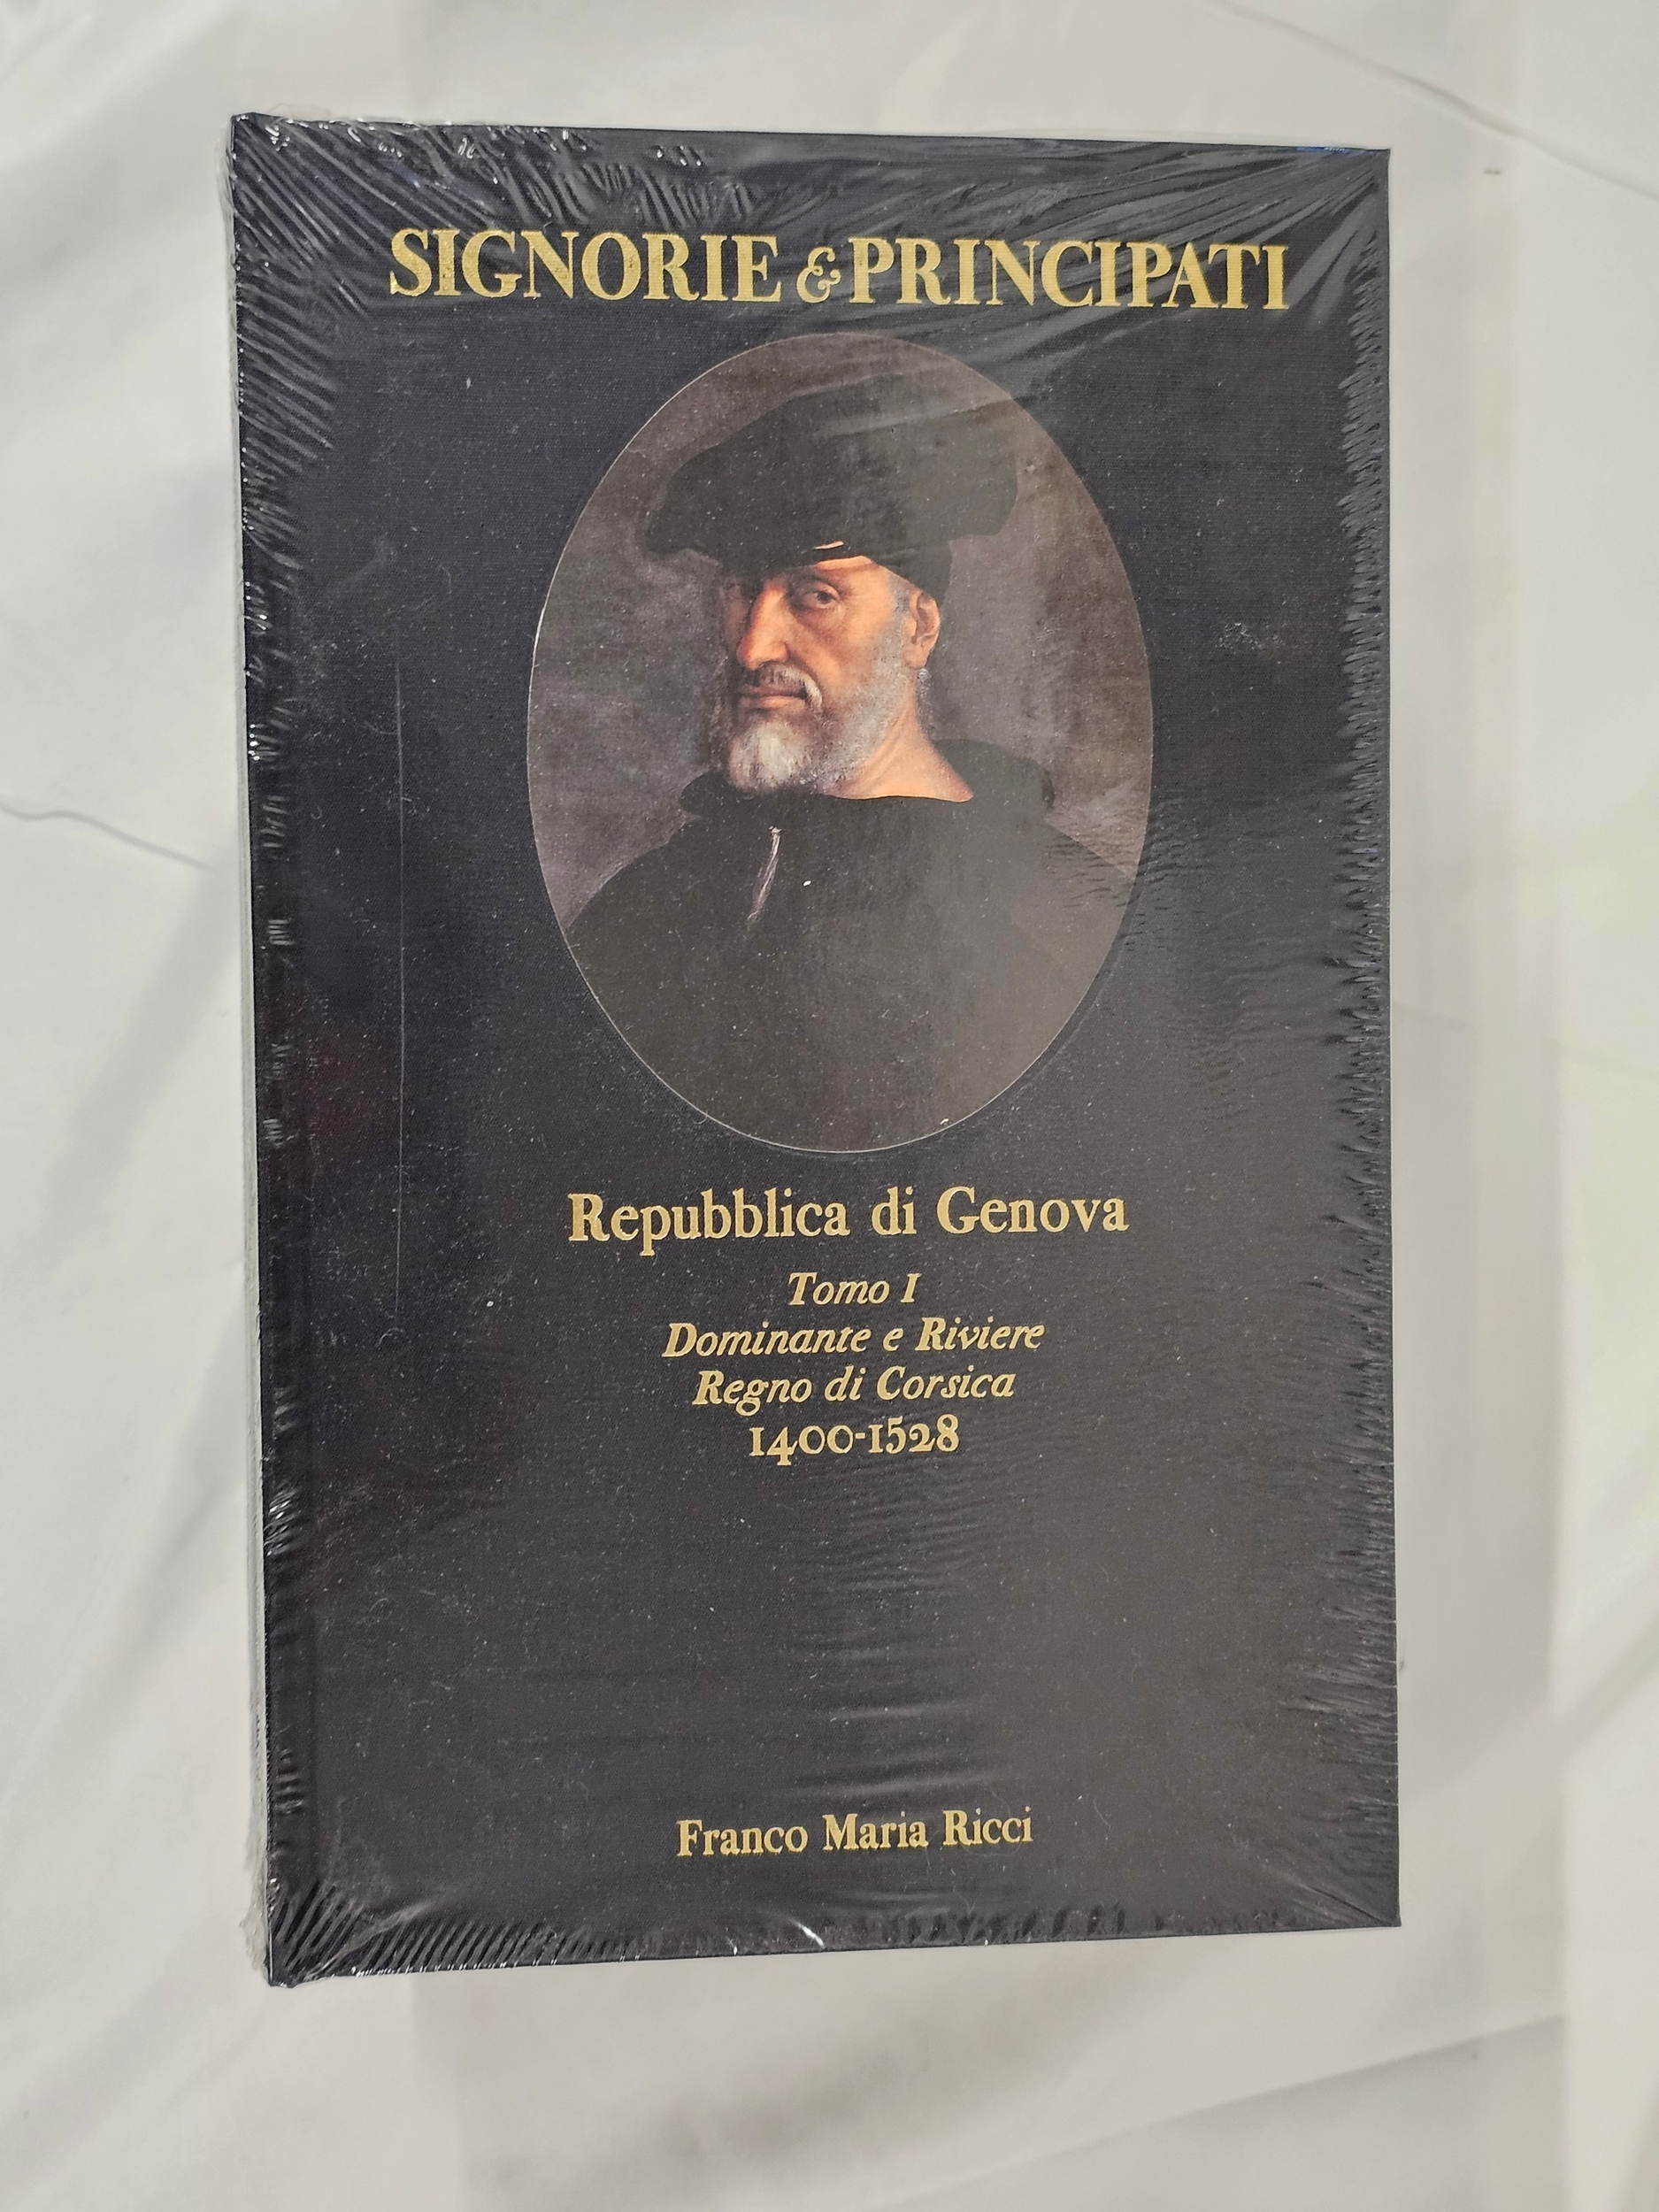 Franco Maria Ricci. A collection of sealed books. Including Signorie e Principati and Ducato Milano. - Image 2 of 3